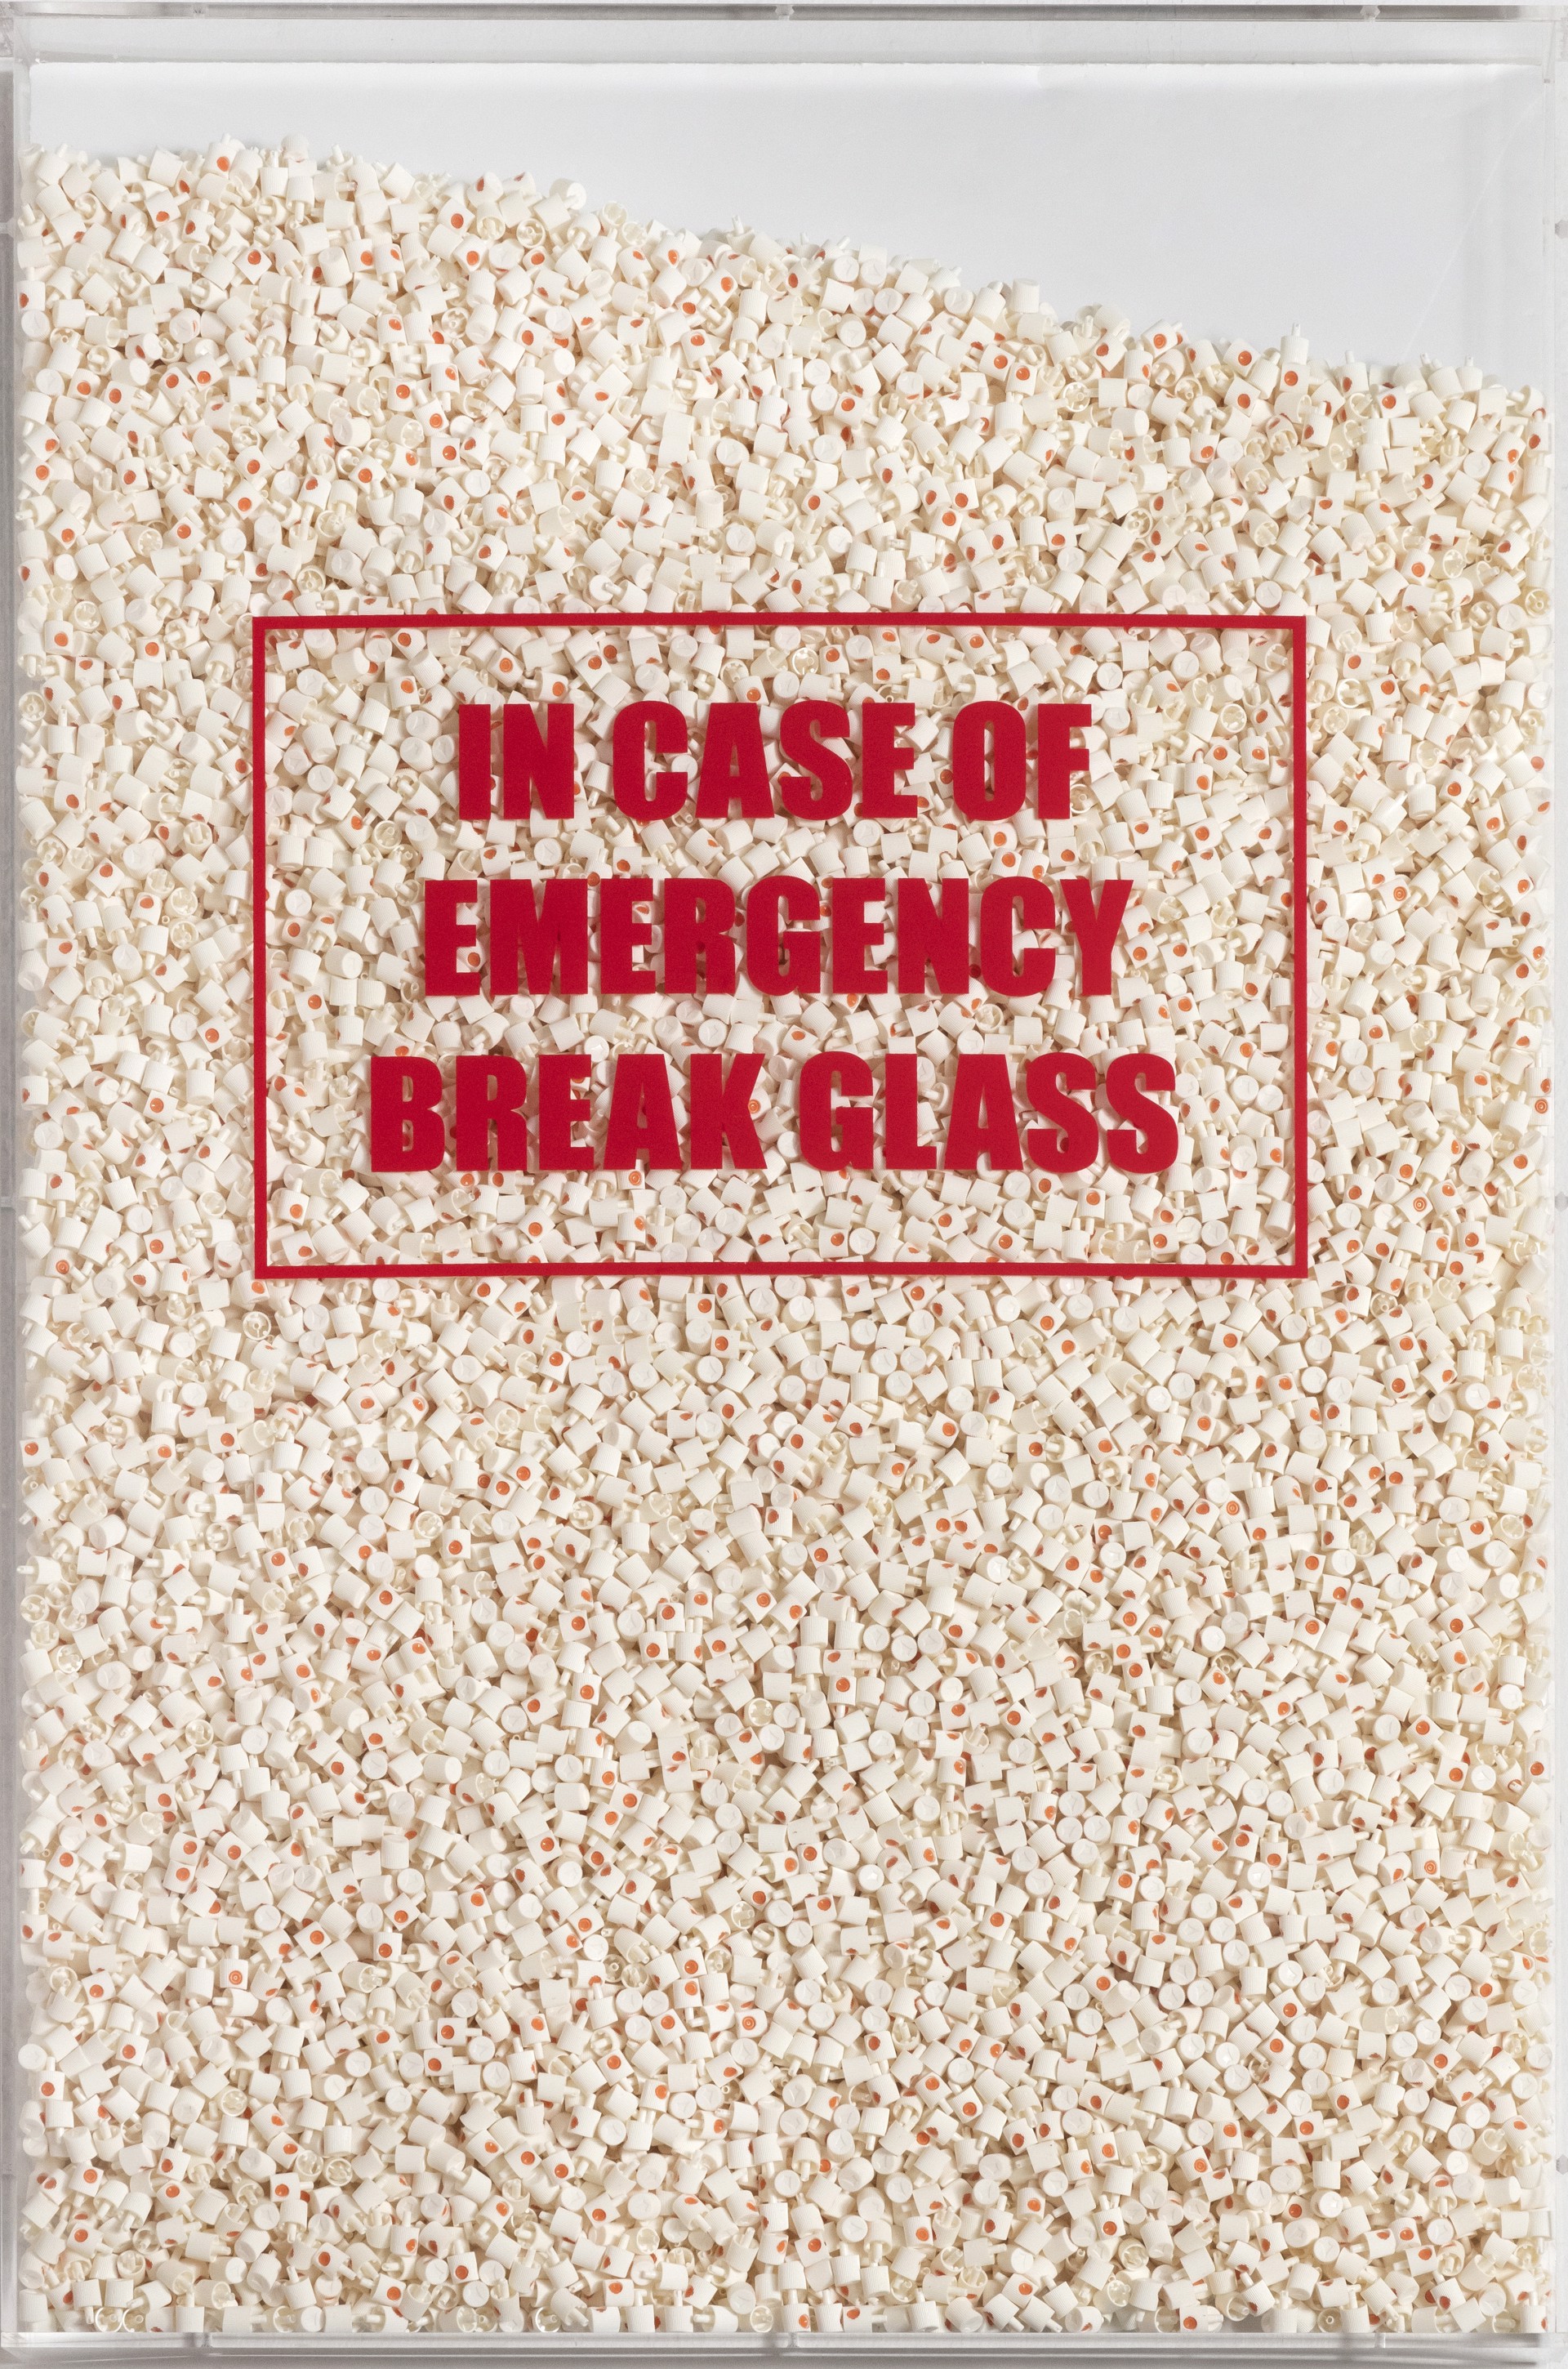 In Case of Emergency Break Glass by Risk